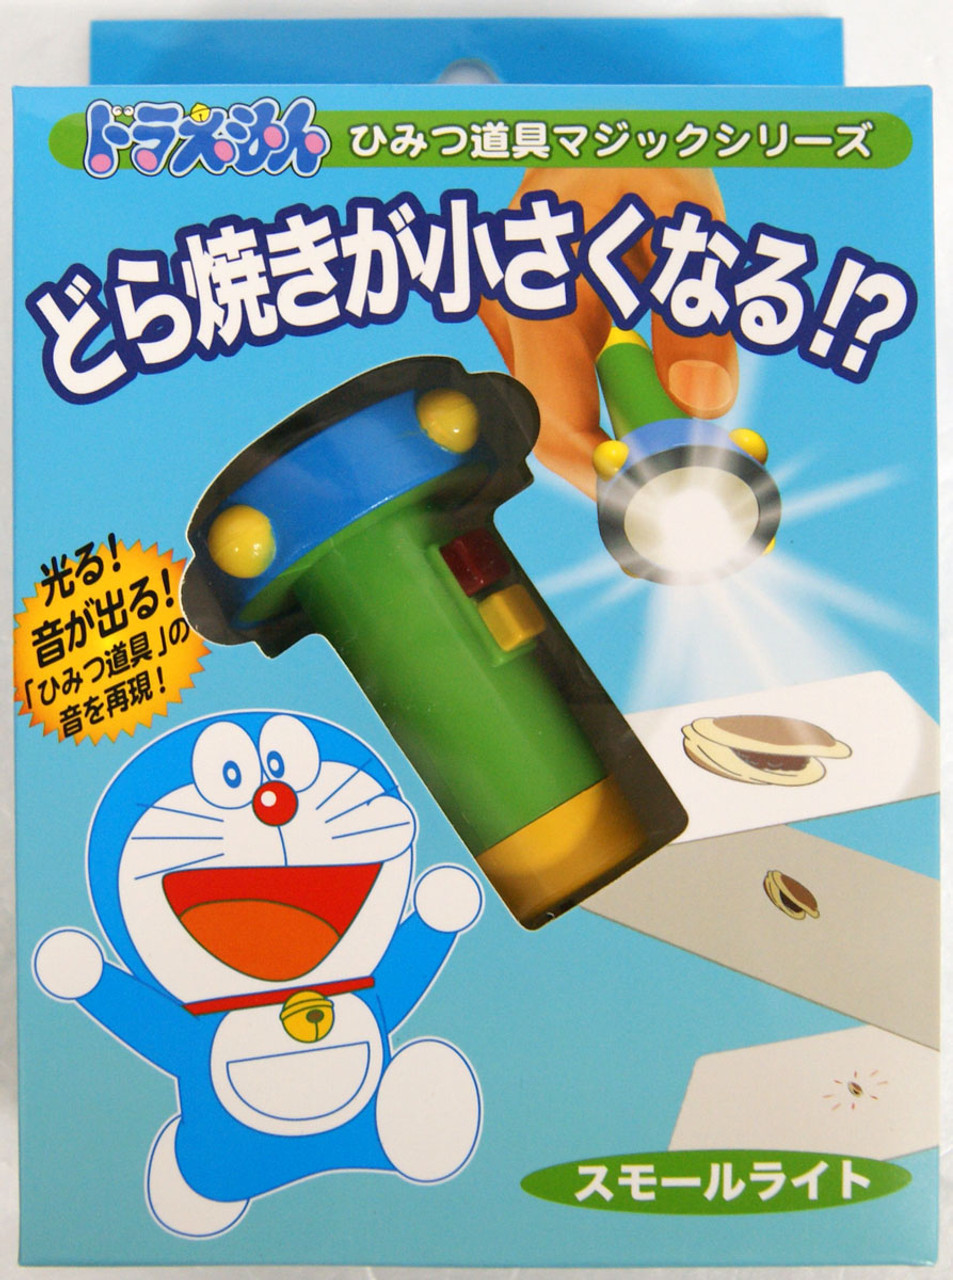 Tenyo Japan Doraemon Secret Gadget Magic Plazajapan